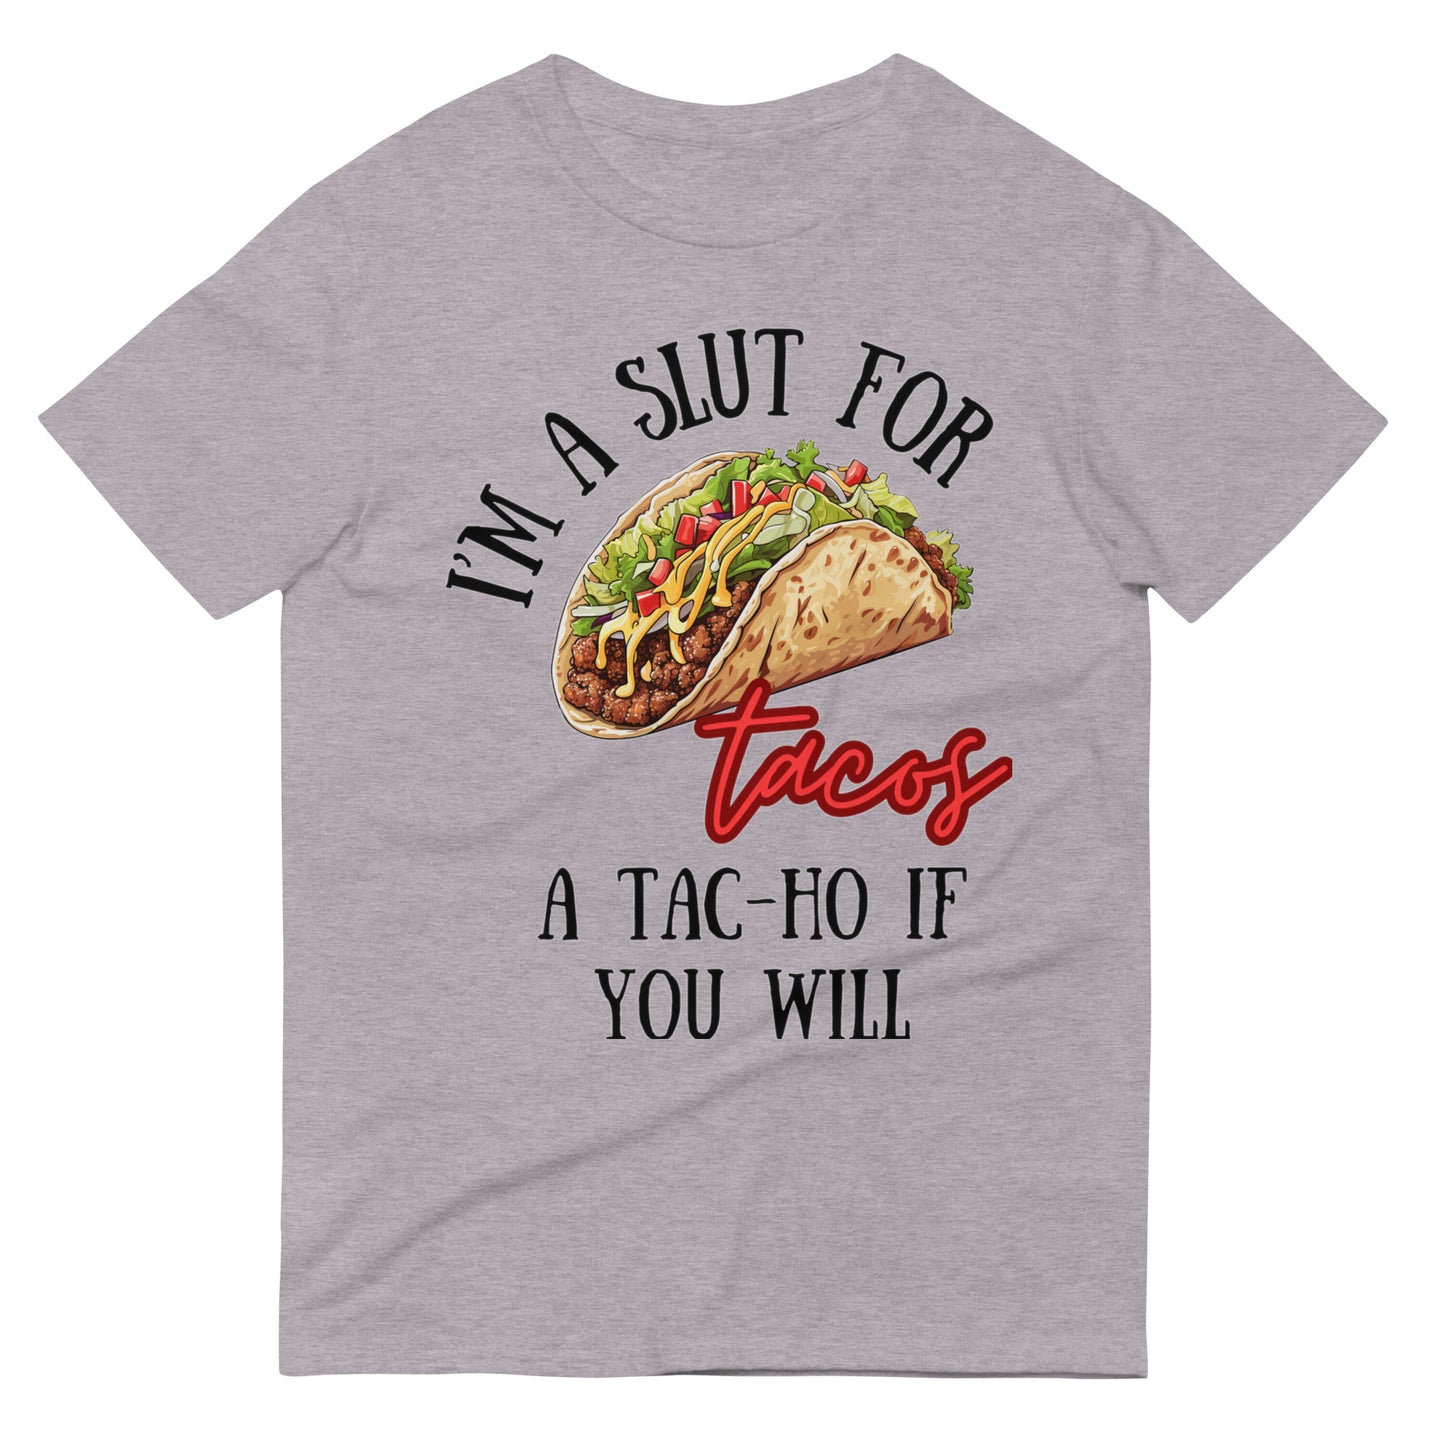 I'm a Slut for Tacos a Tac-Ho If You Will